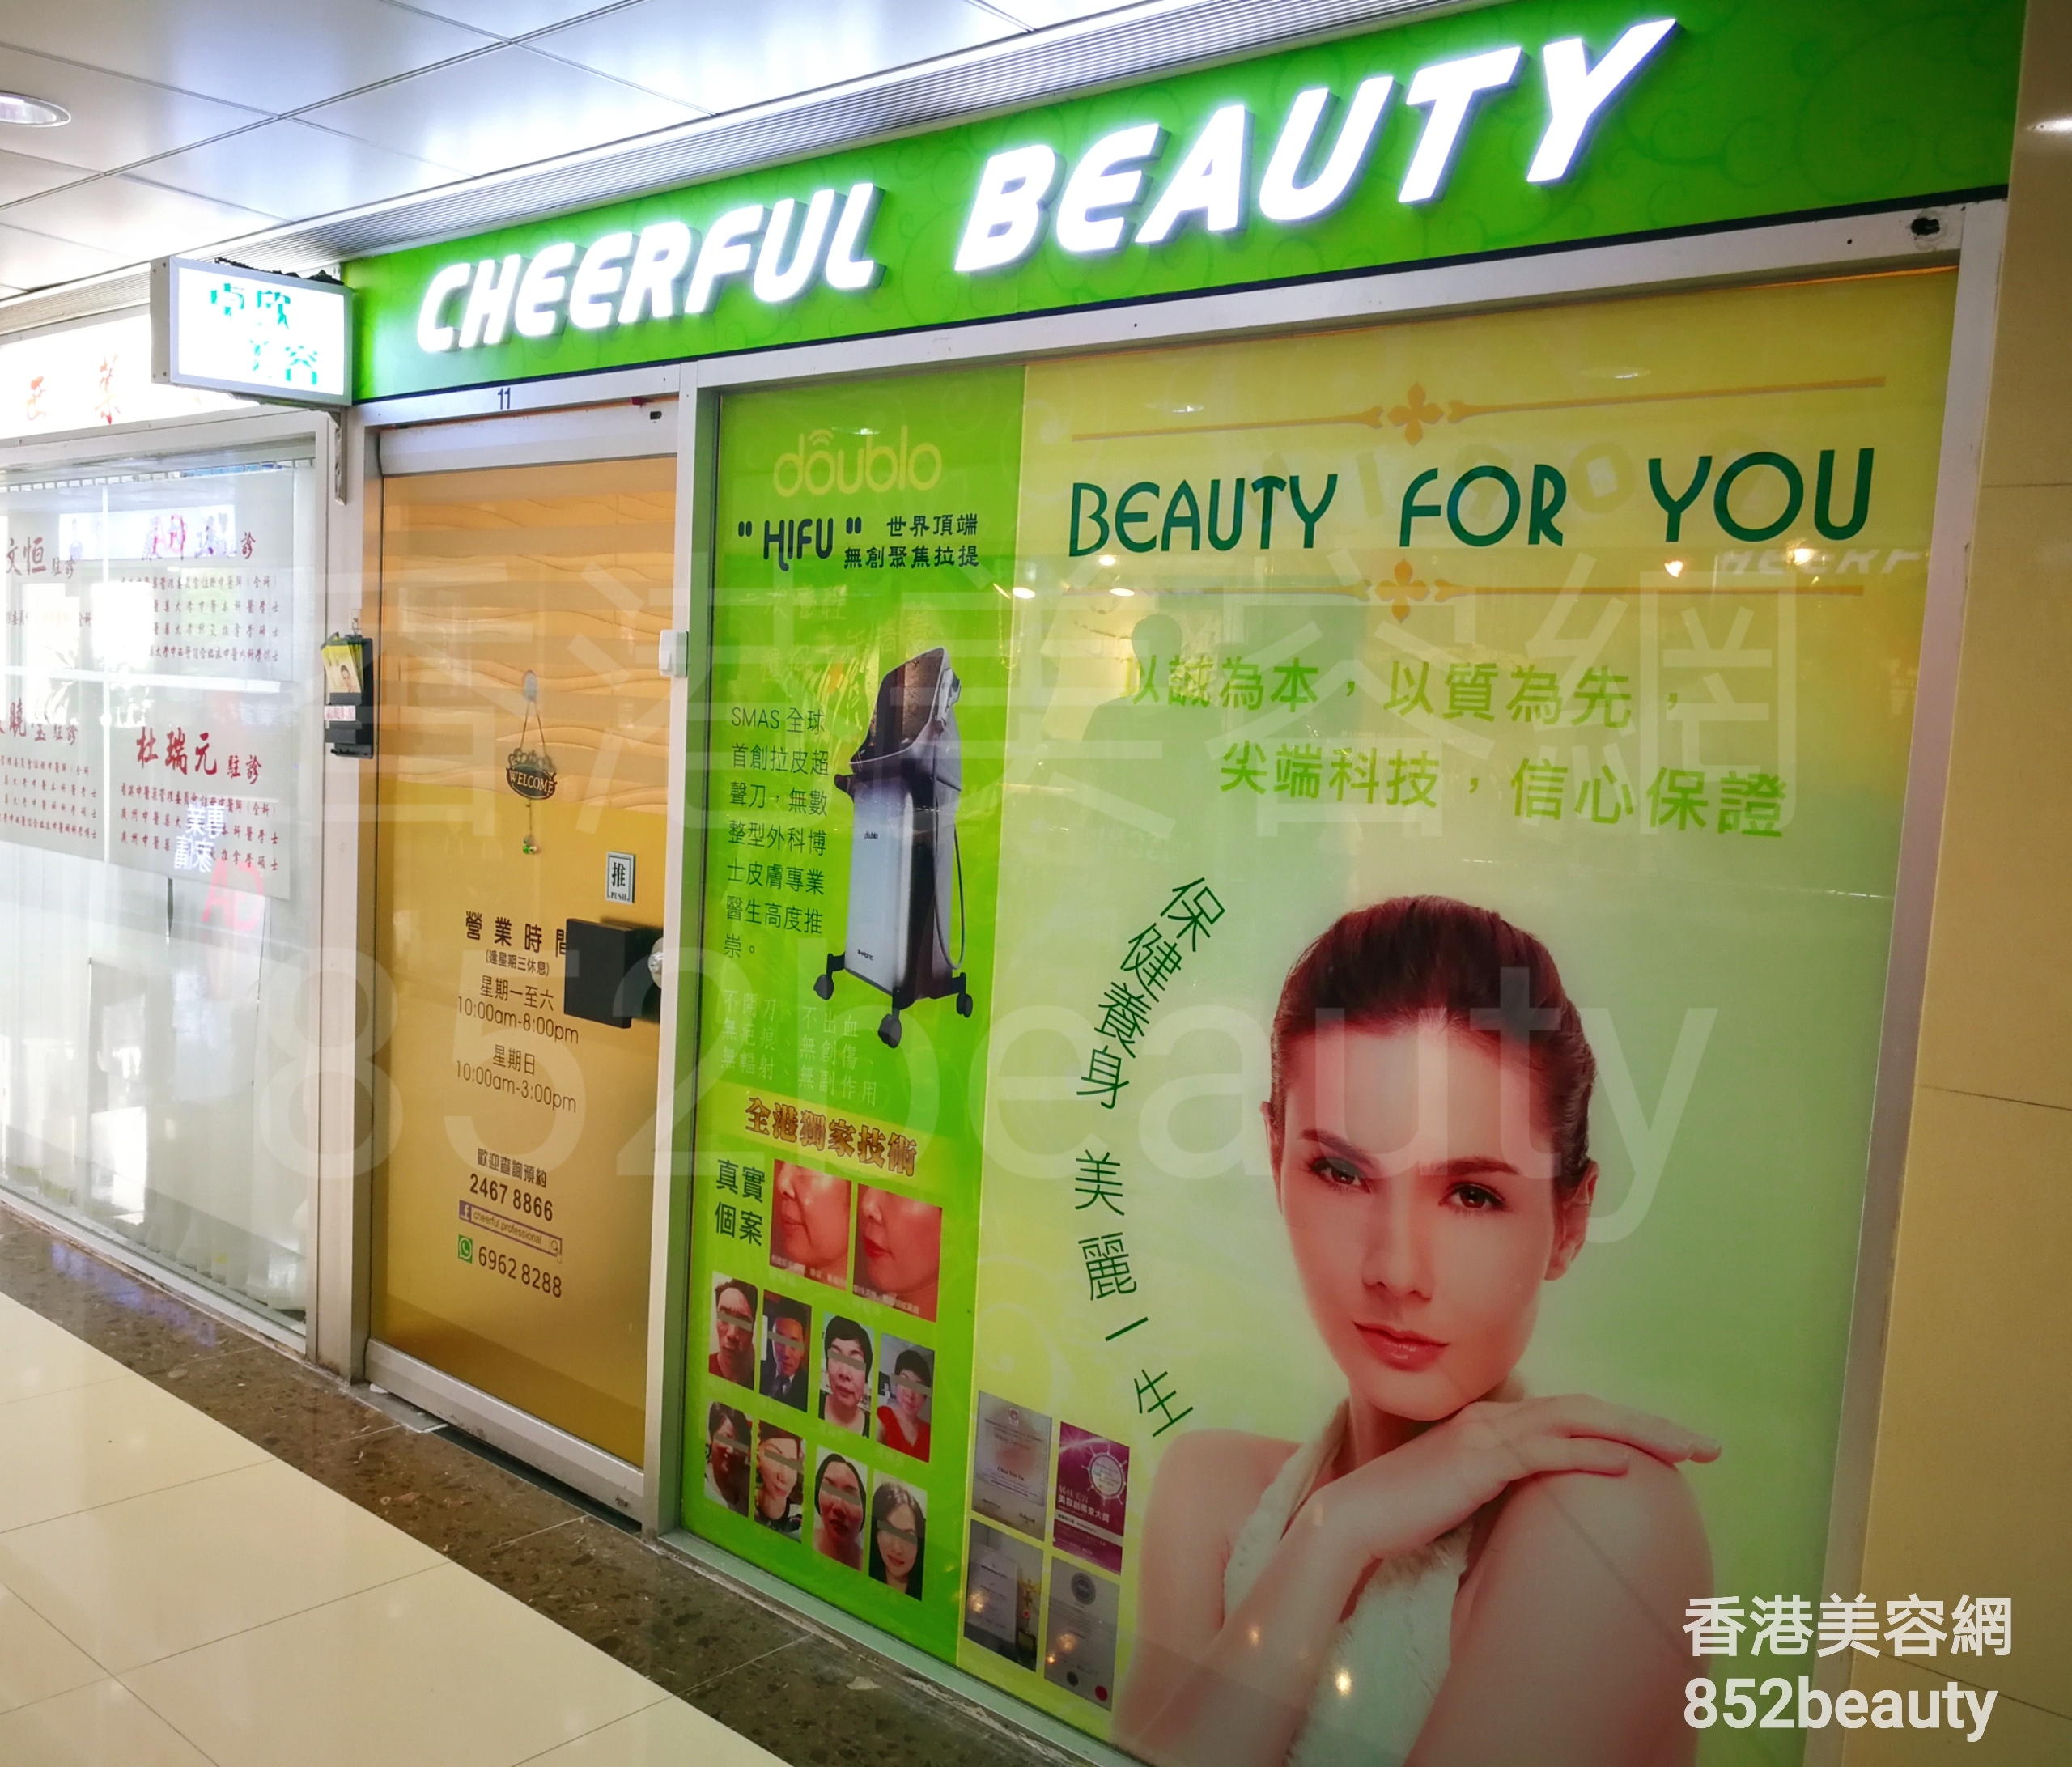 香港美容網 Hong Kong Beauty Salon 美容院 / 美容師: 卓欣美容 CHEERFUL BEAUTY